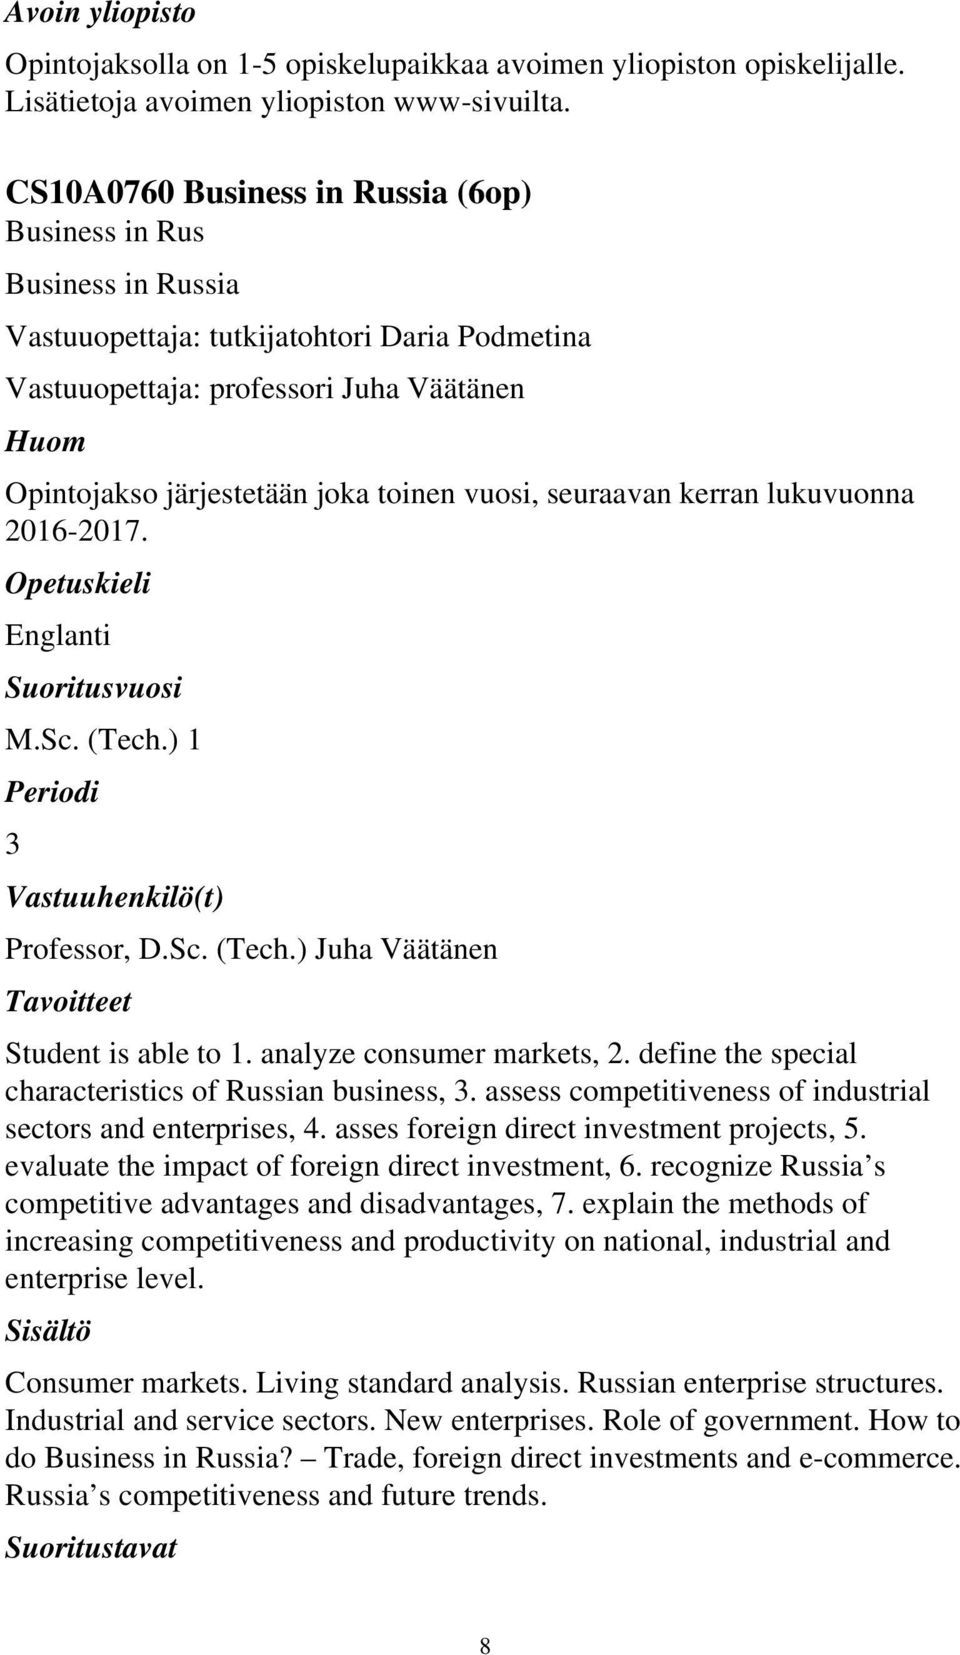 vuosi, seuraavan kerran lukuvuonna 2016-2017. Englanti M.Sc. (Tech.) 1 3 Professor, D.Sc. (Tech.) Juha Väätänen Student is able to 1. analyze consumer markets, 2.